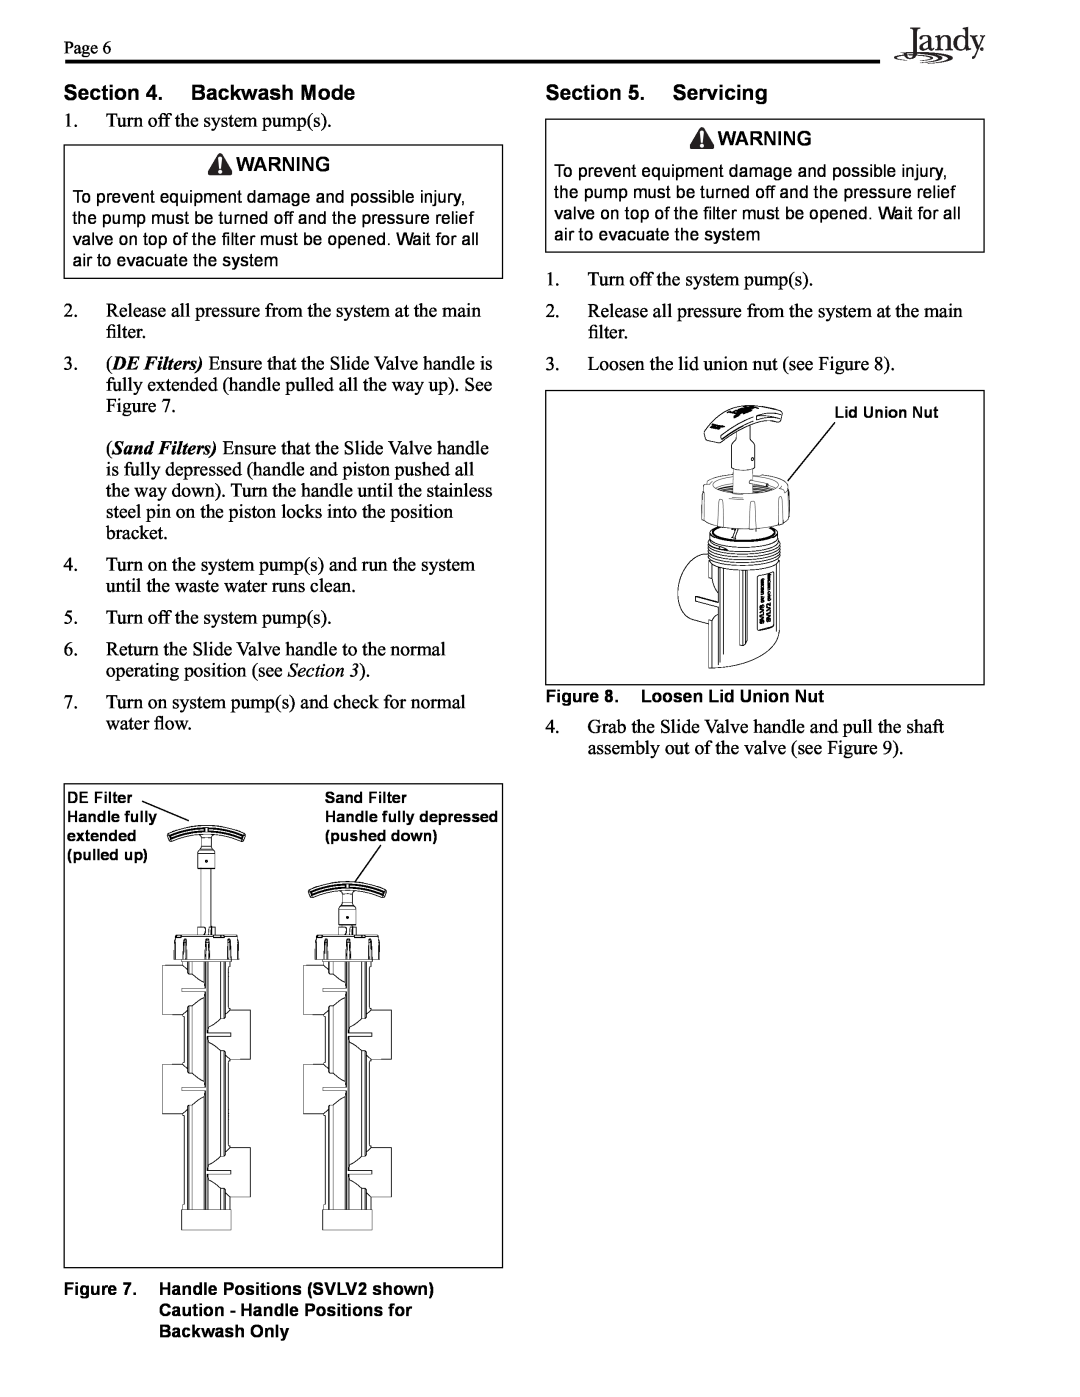 Pentair Slide Backwash Valve operation manual Backwash Mode, Servicing 